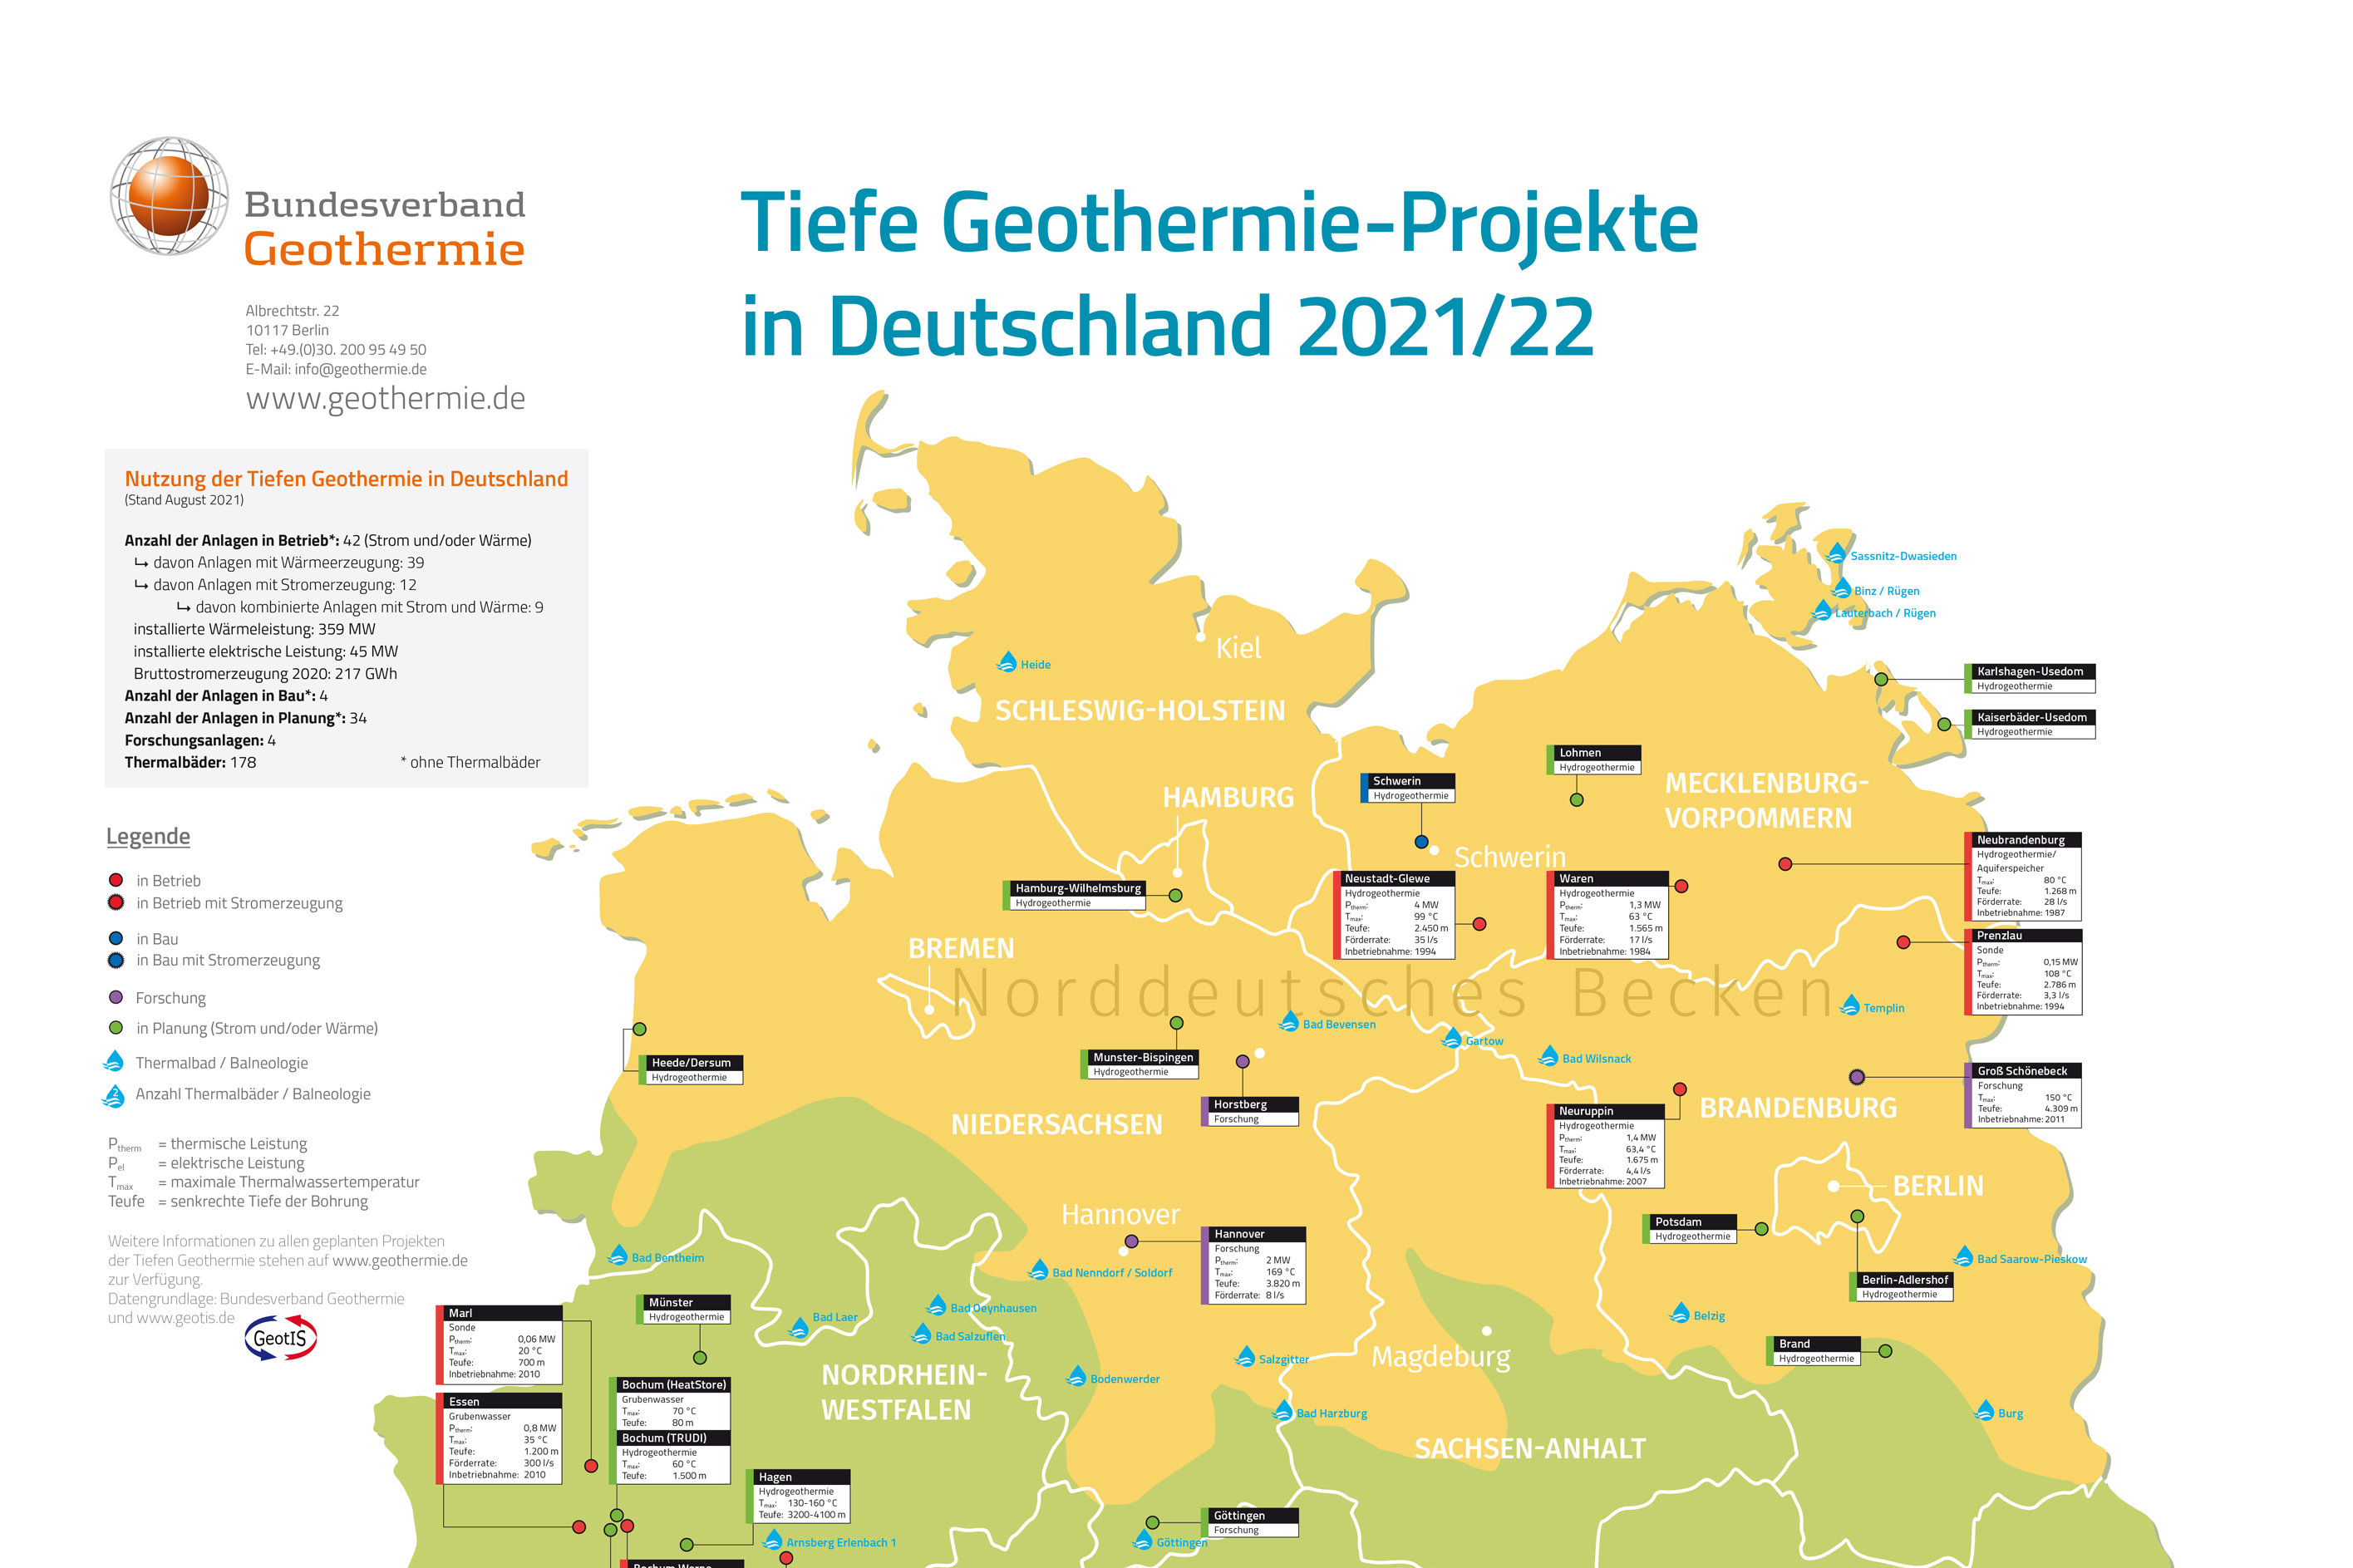 Tiefe Geothermie-Projekte in Deutschland 2021/22